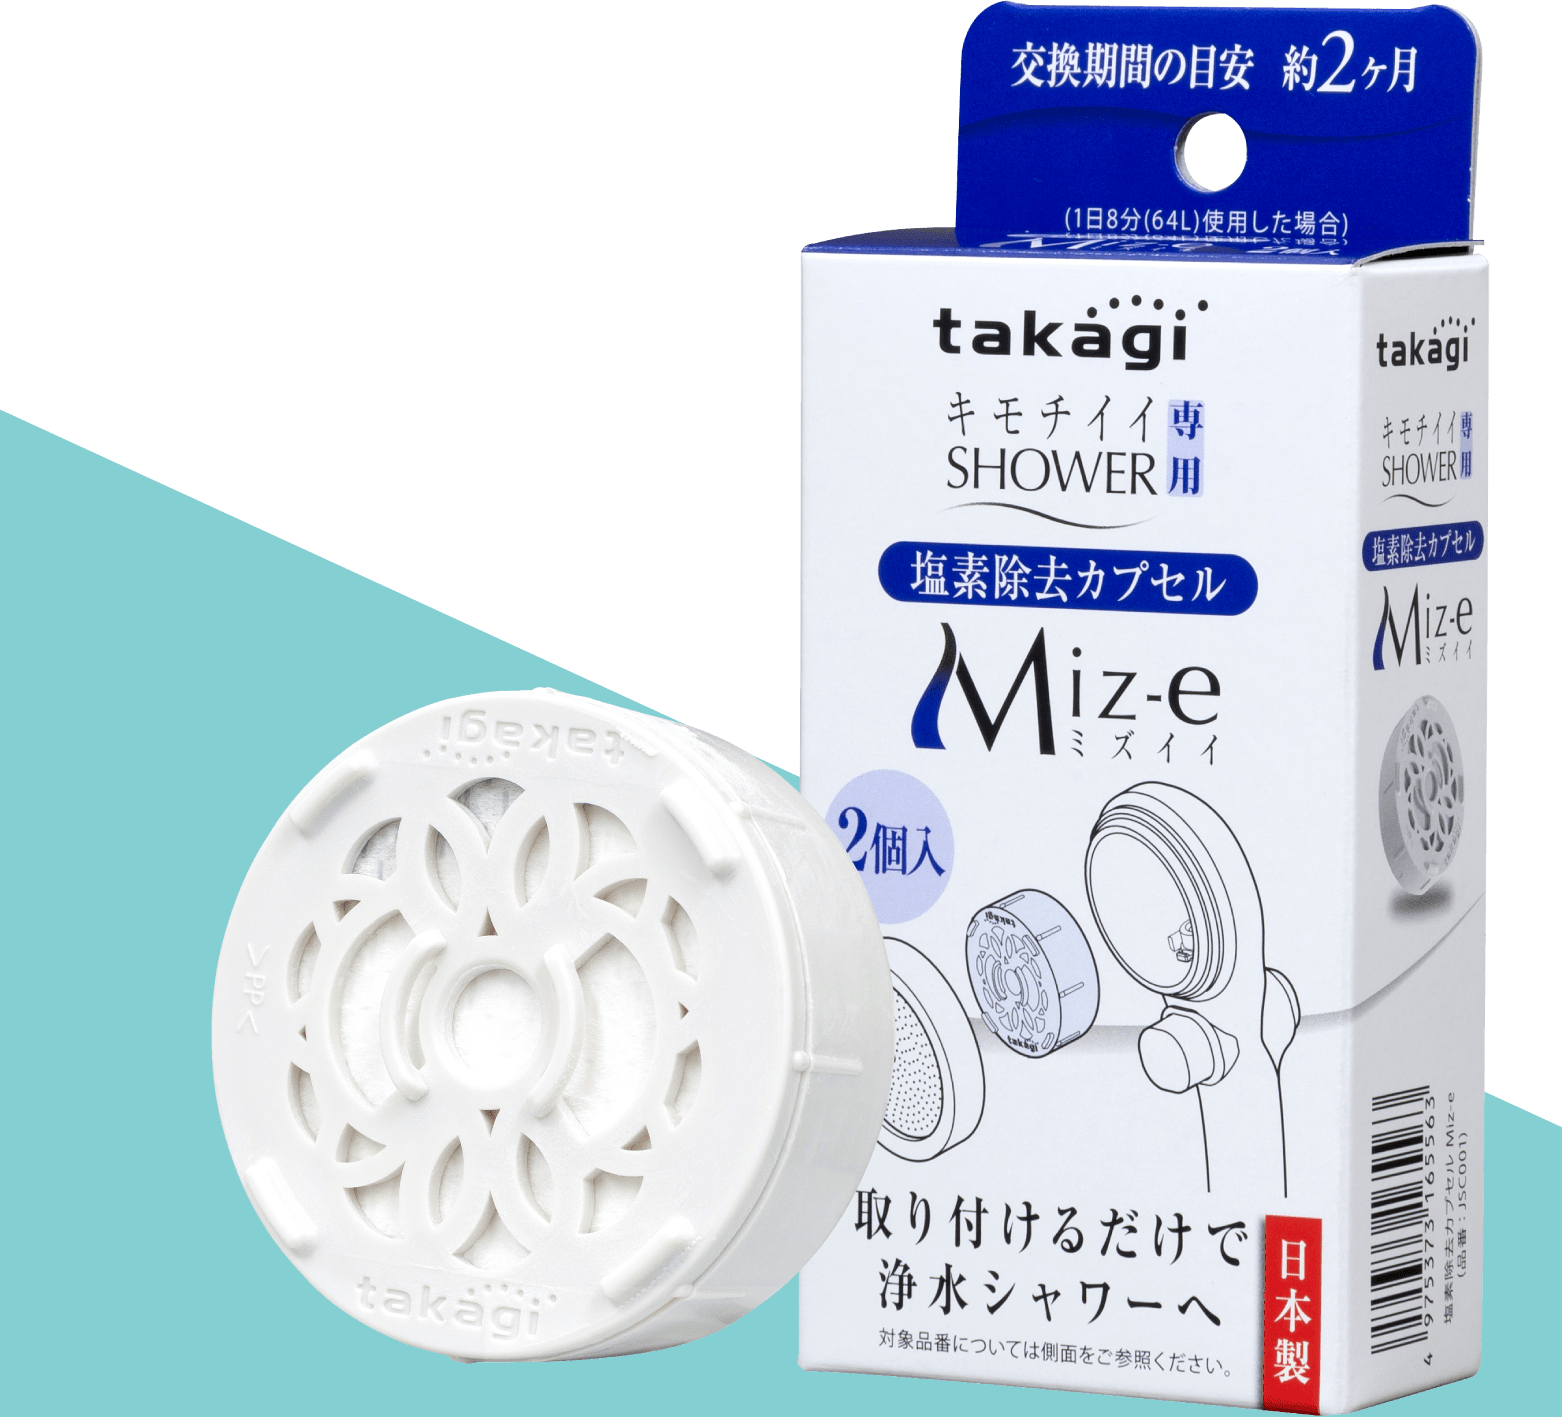 タカギ(Takagi) 塩素除去カプセル Miz-e ミズイイ シャワー シャワーヘッド カートリッジ 2個入 JSC001